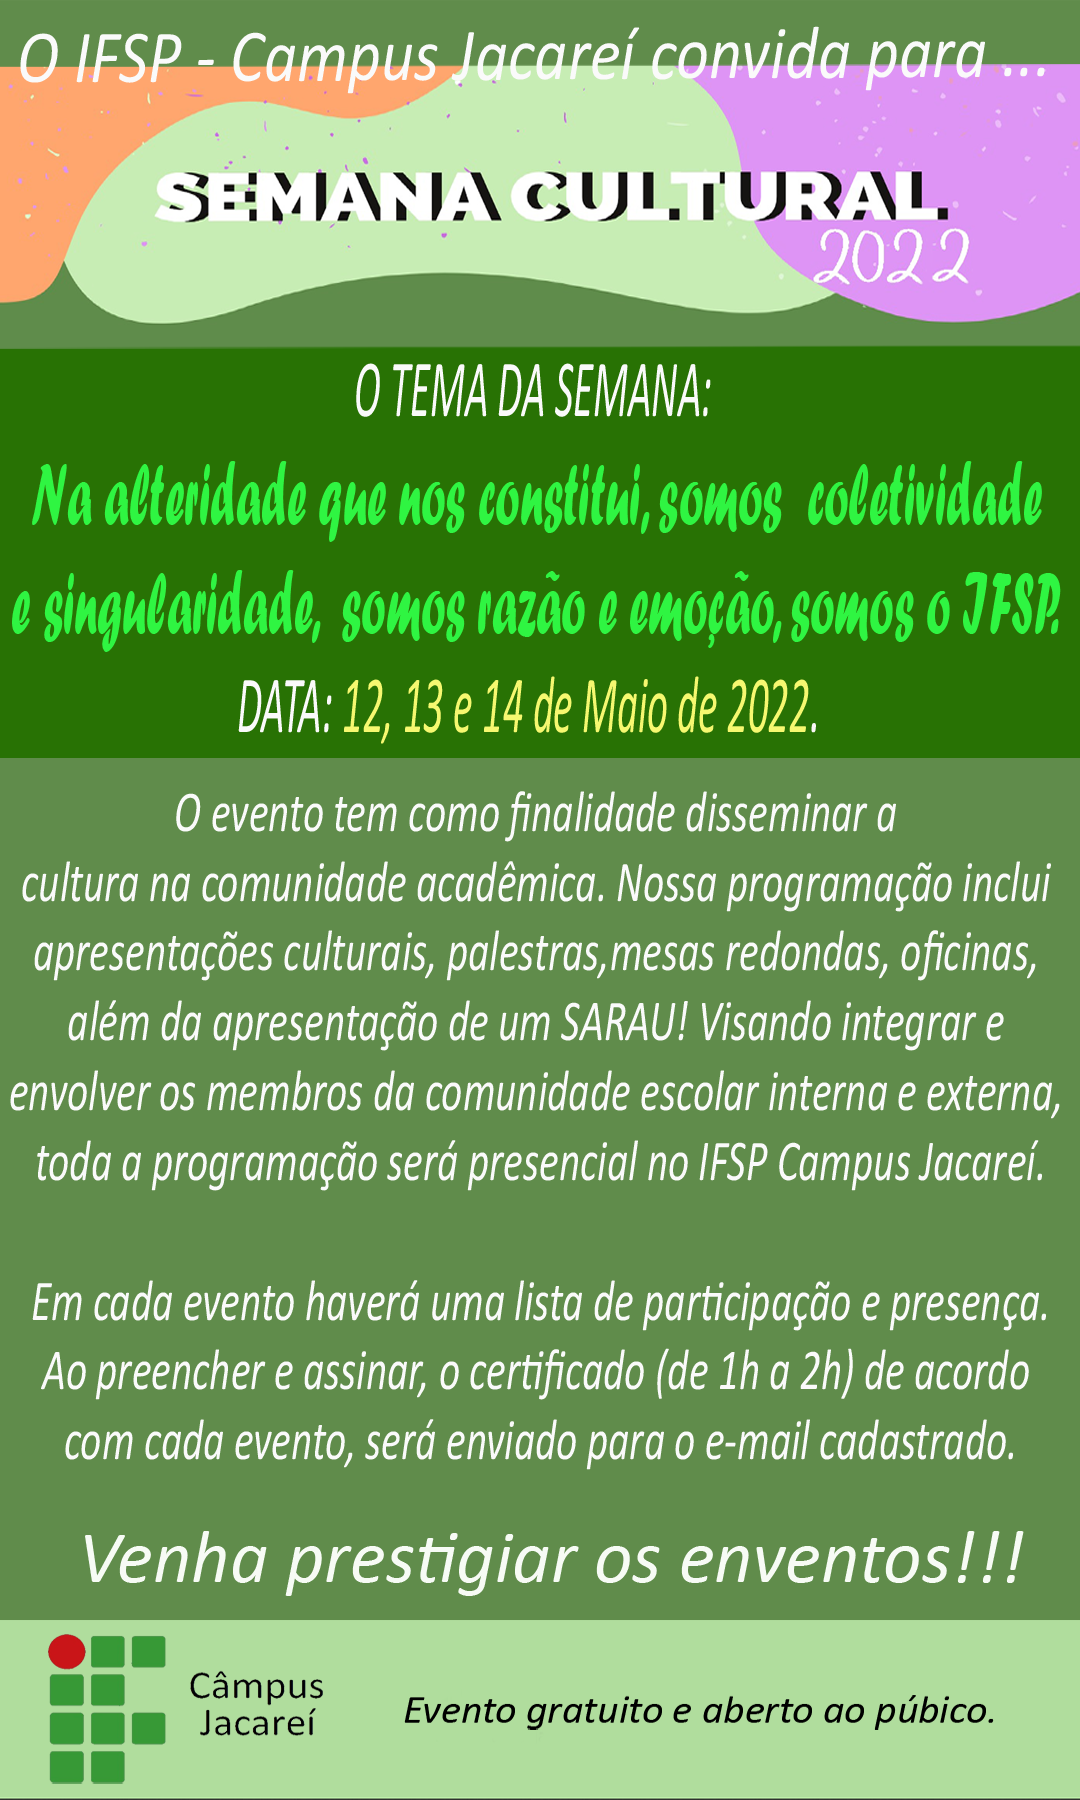 Foto de Semana Cultural IFSP-JCR 2022 - O retorno das atividades presencias e seus desafios.